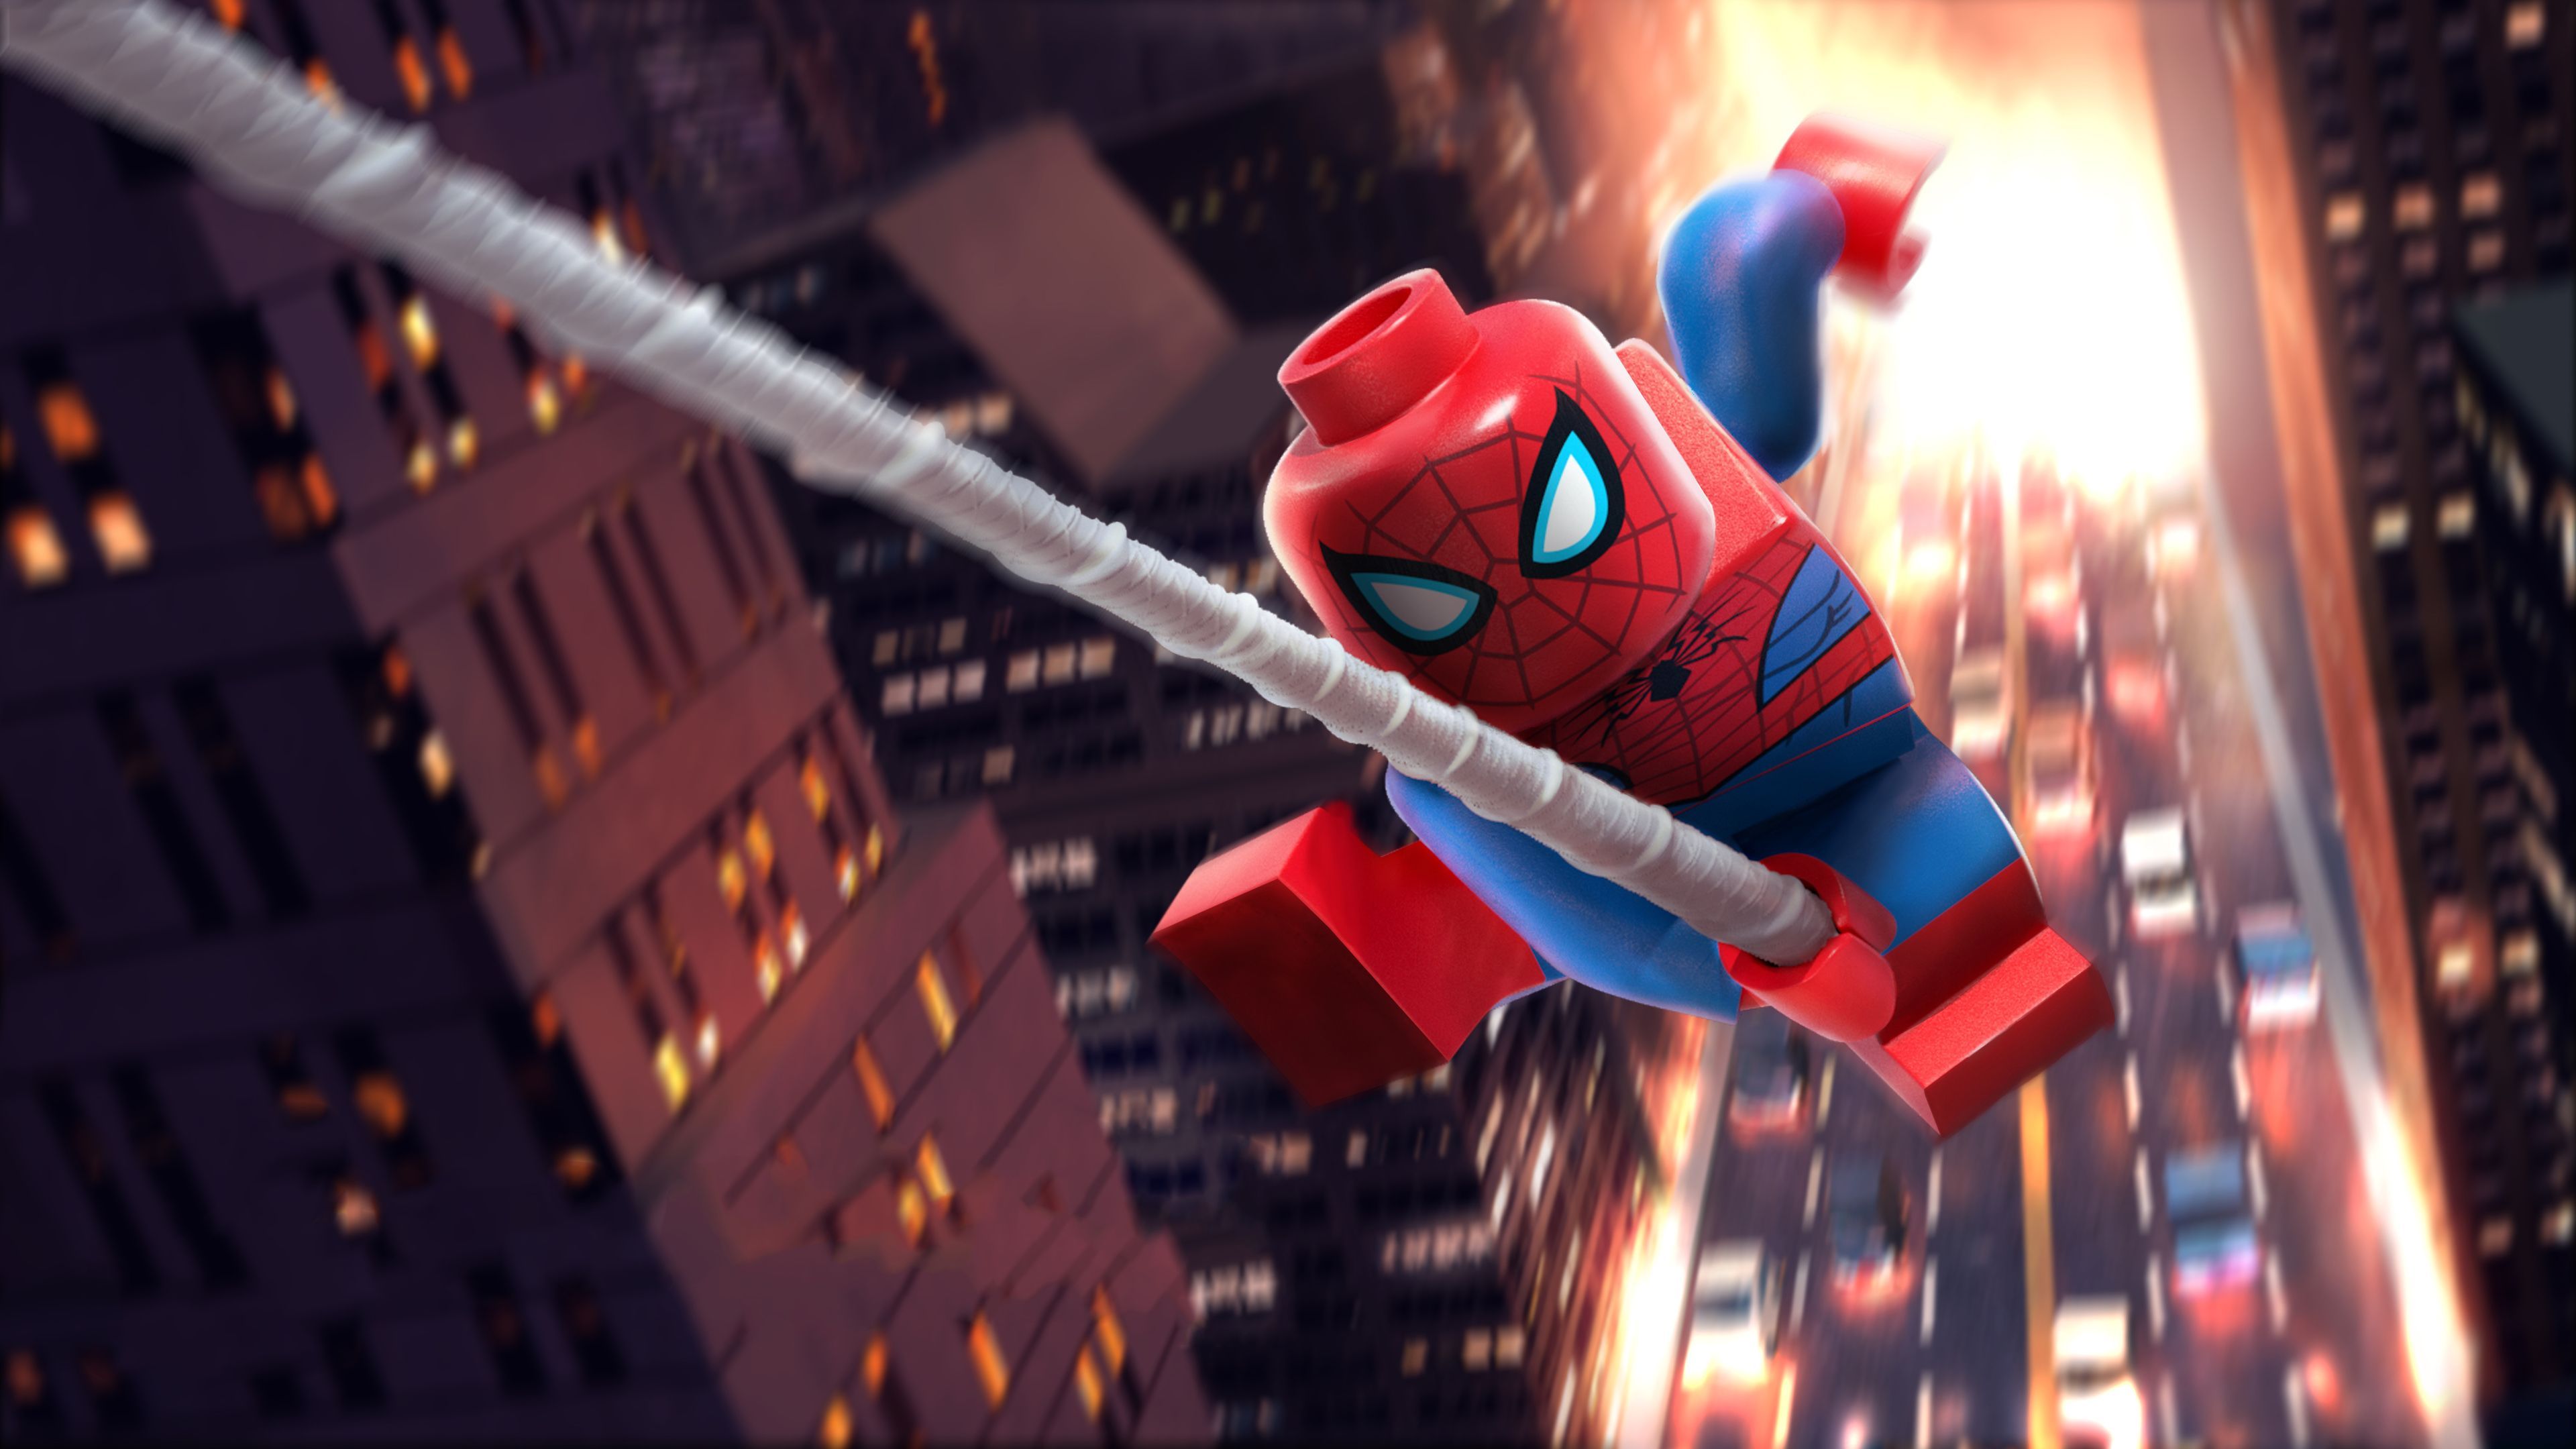 Lego Spiderman 5k superheroes wallpapers, spiderman wallpapers, lego wallpa...